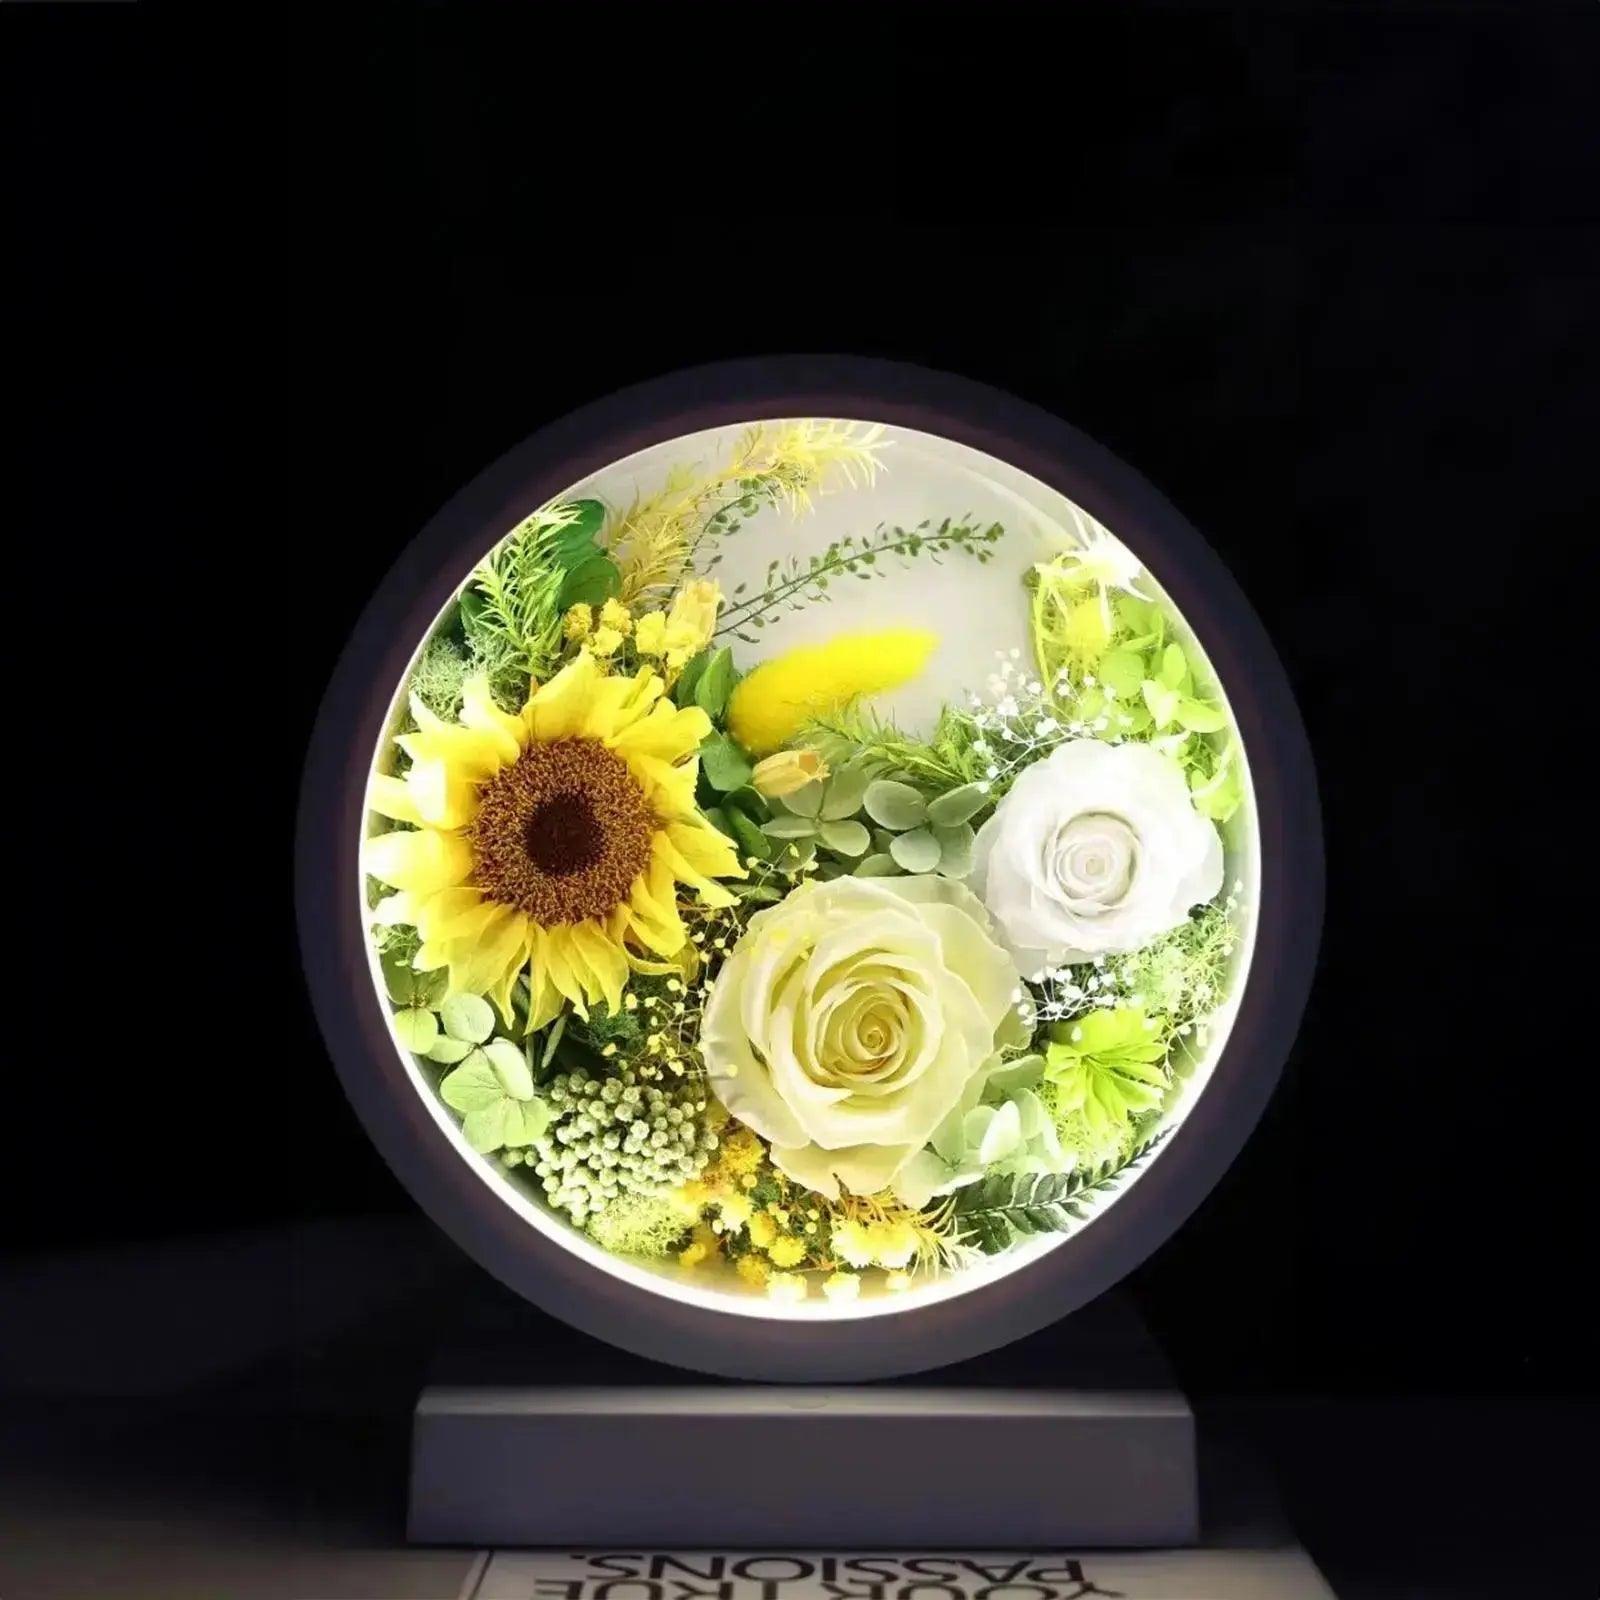 Eternal Bloom Sunflower & Rose Lamp - Imaginary Worlds